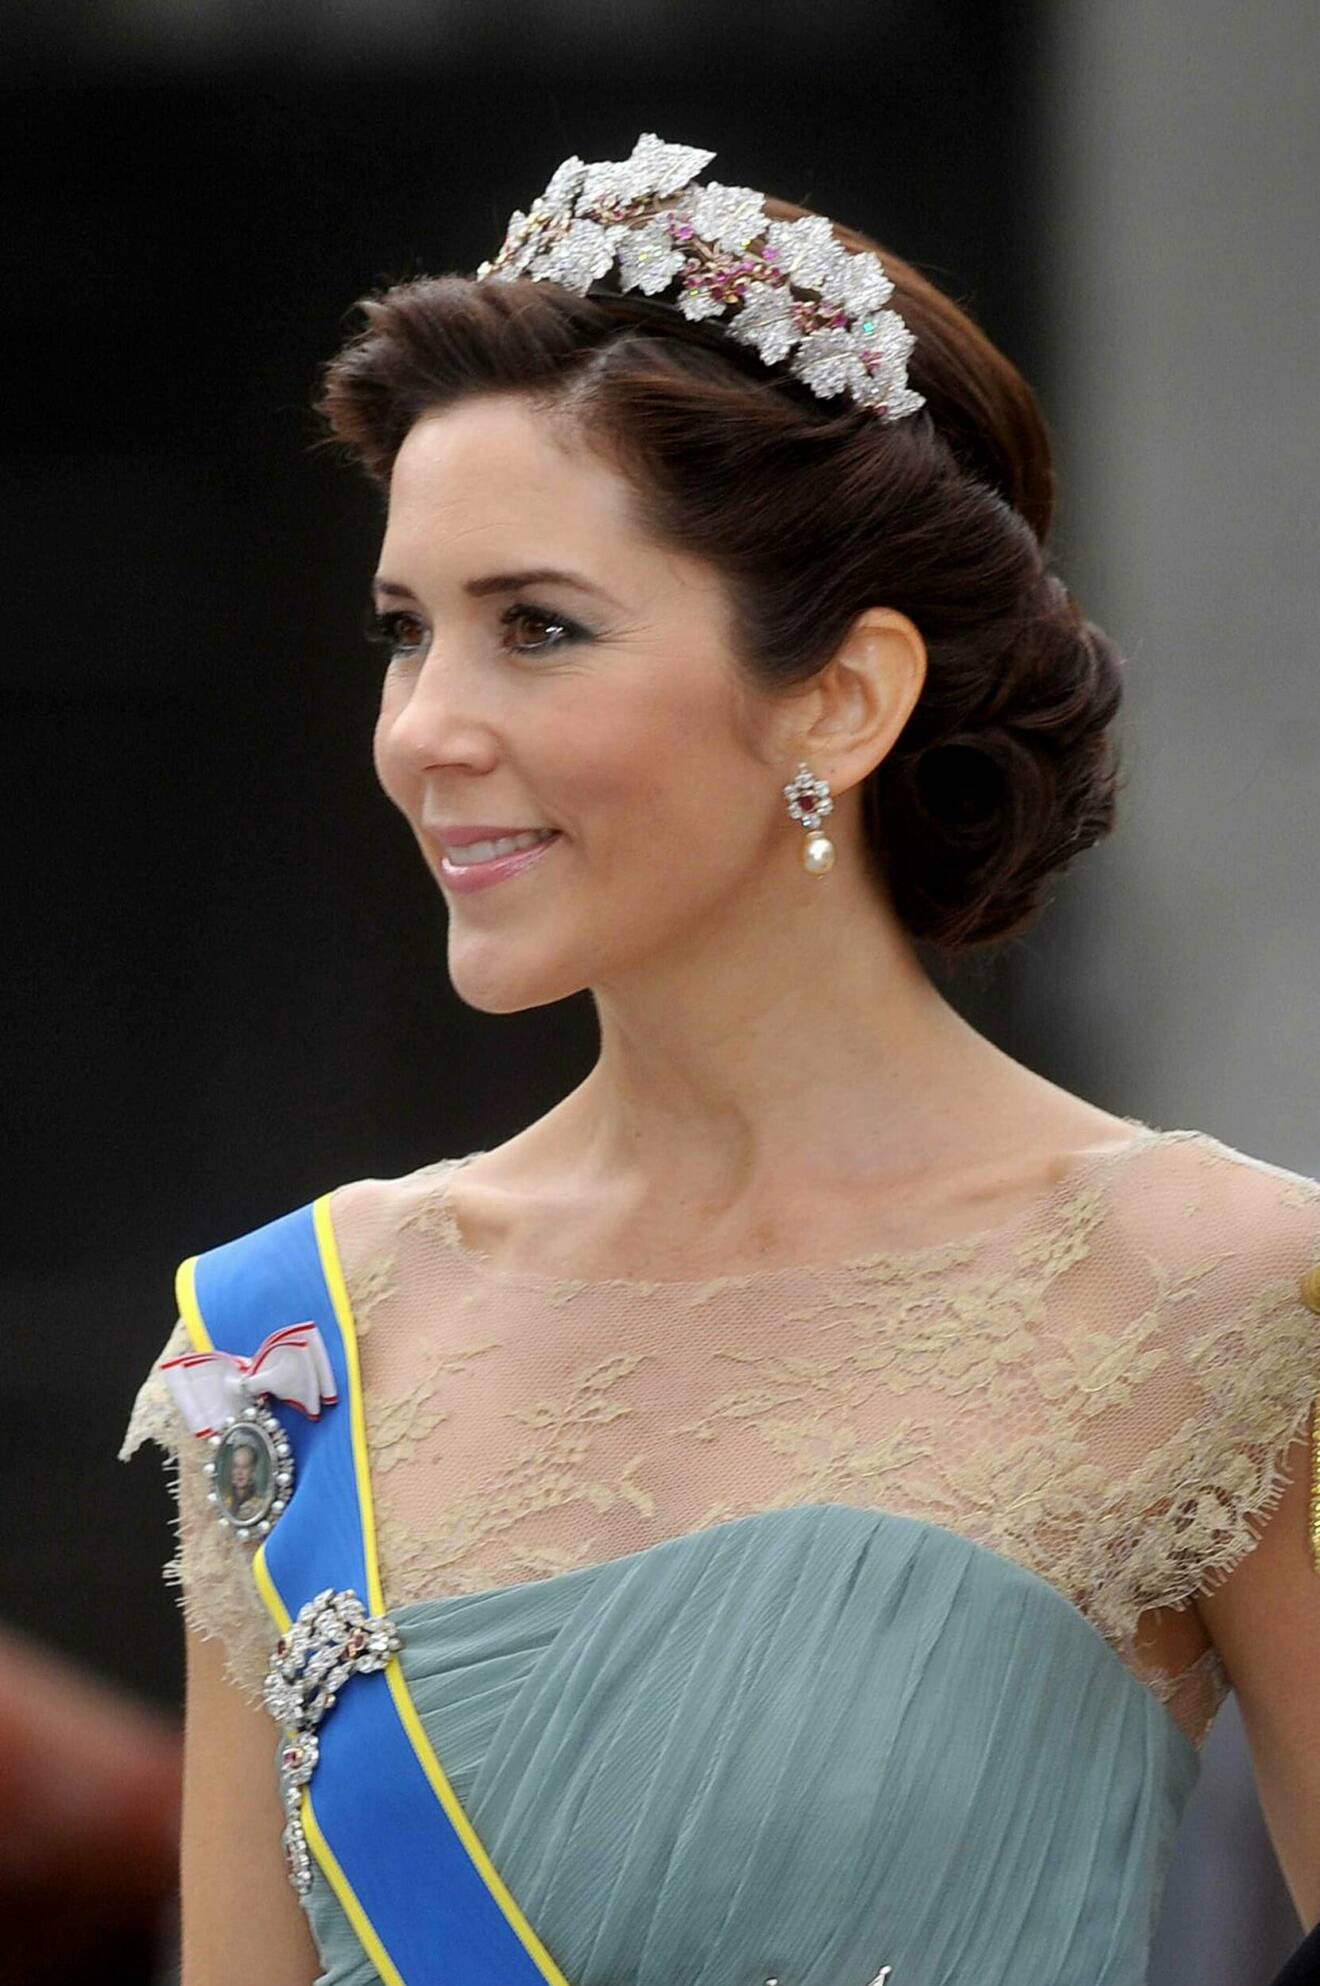 Kronprinsessan Mary vid prins Daniel och kronprinsessan Victorias bröllop 2010.